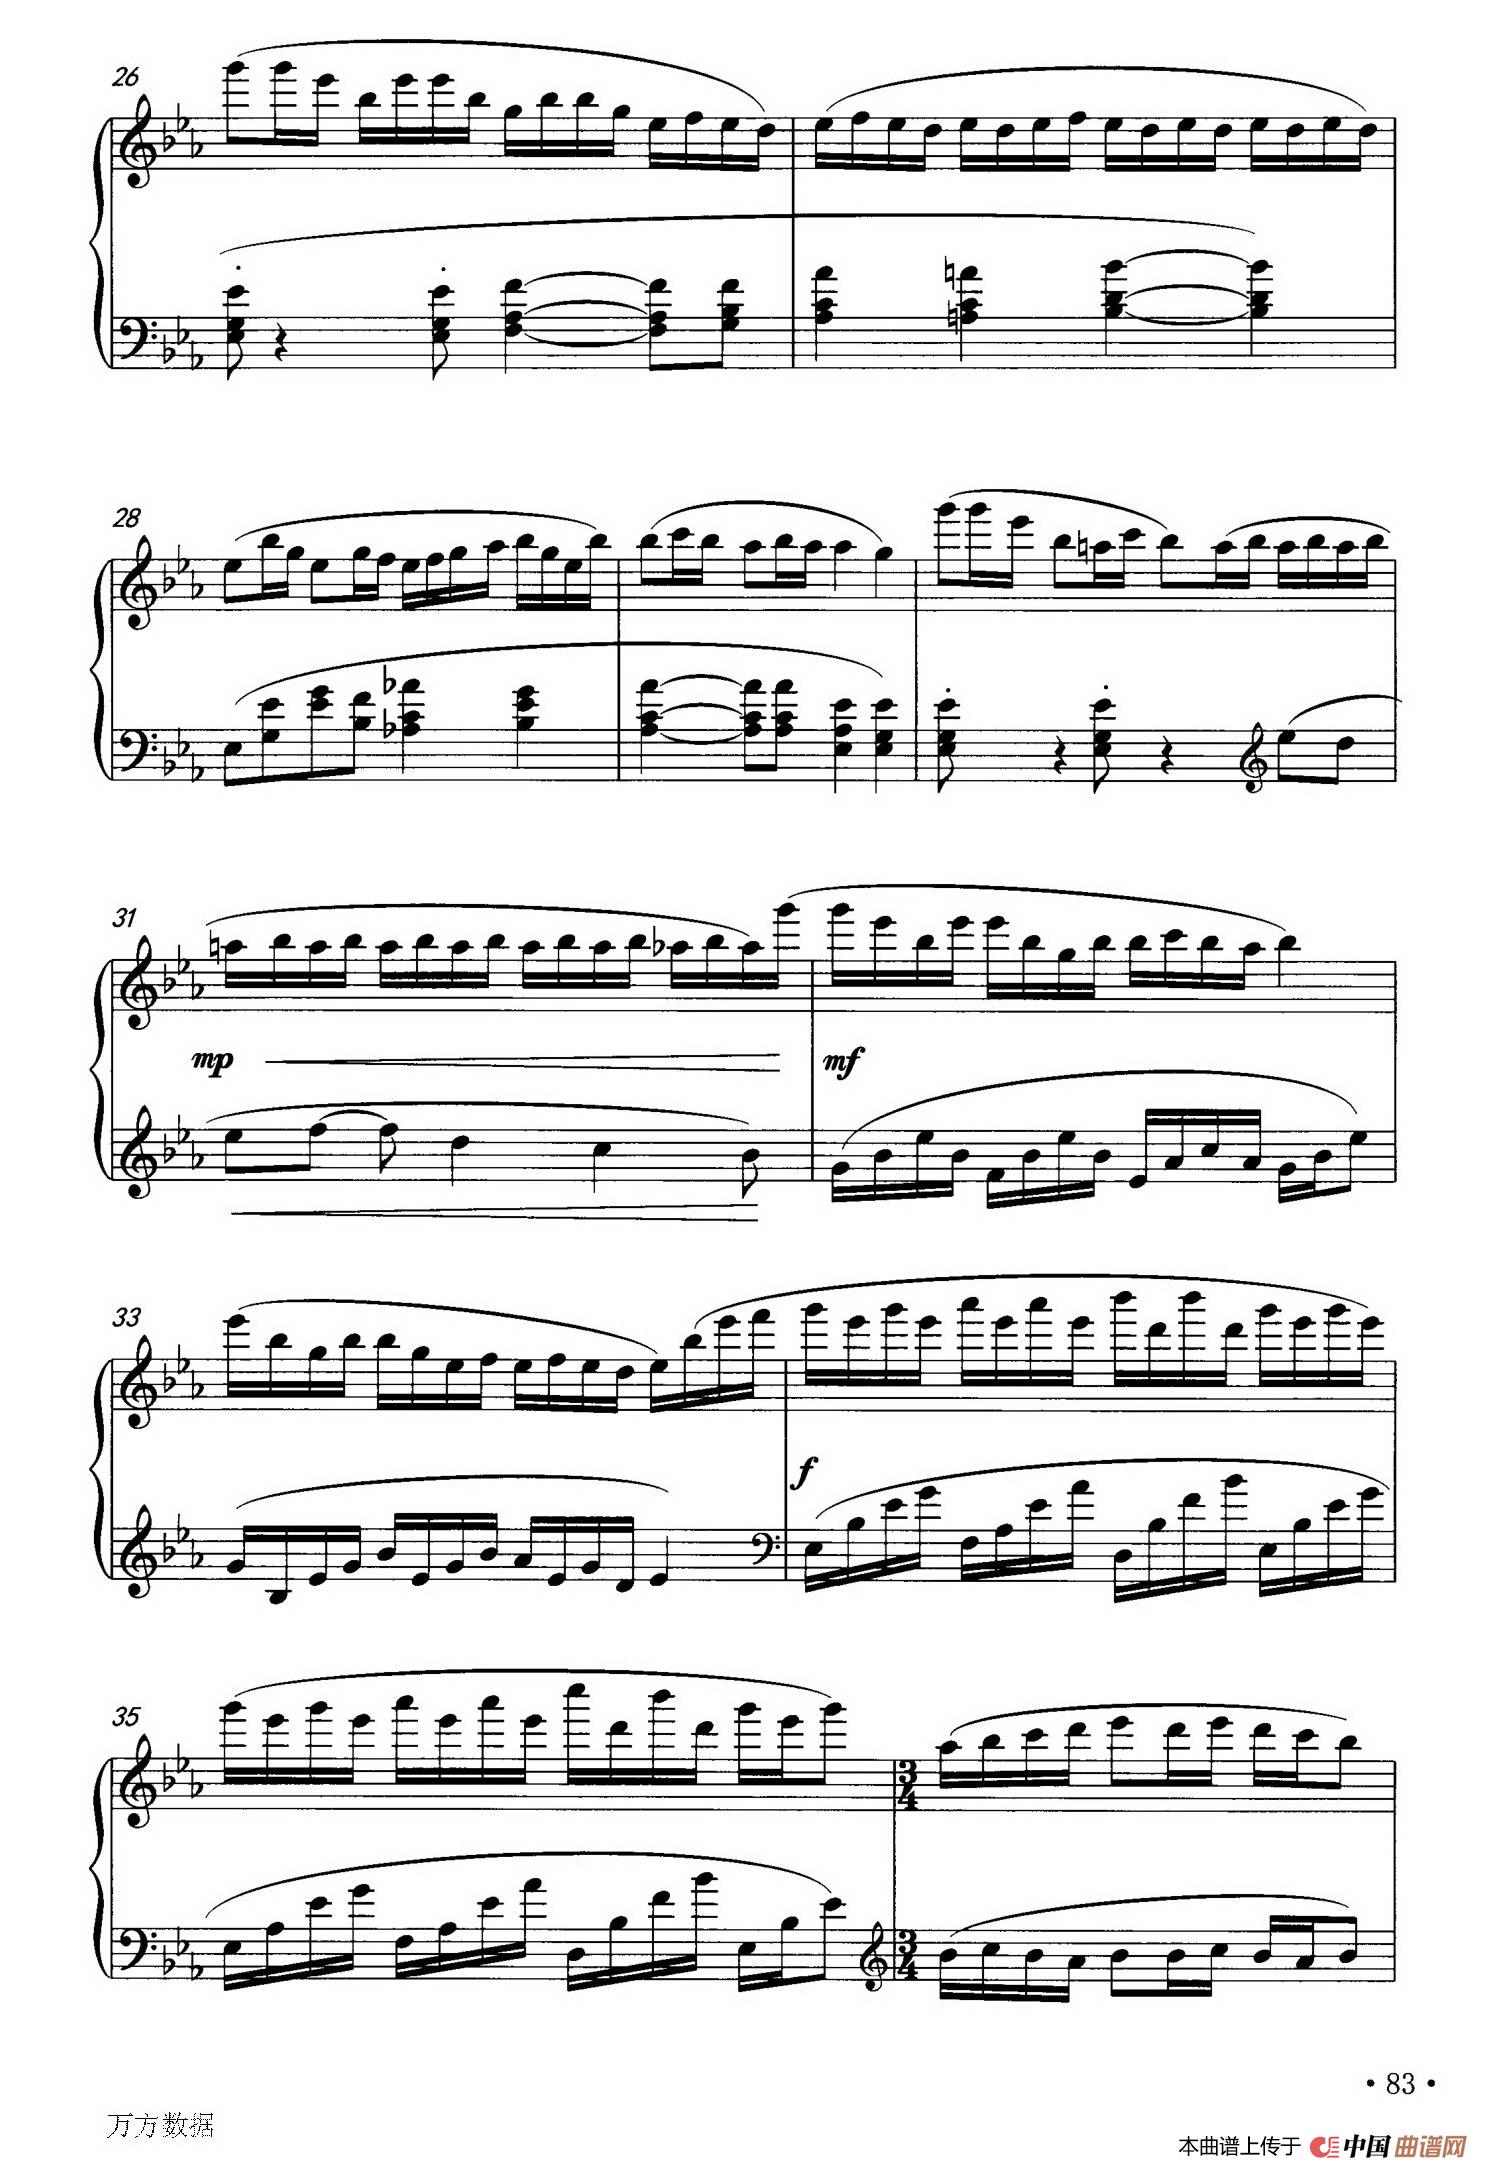 《钢琴小品》钢琴曲谱图分享